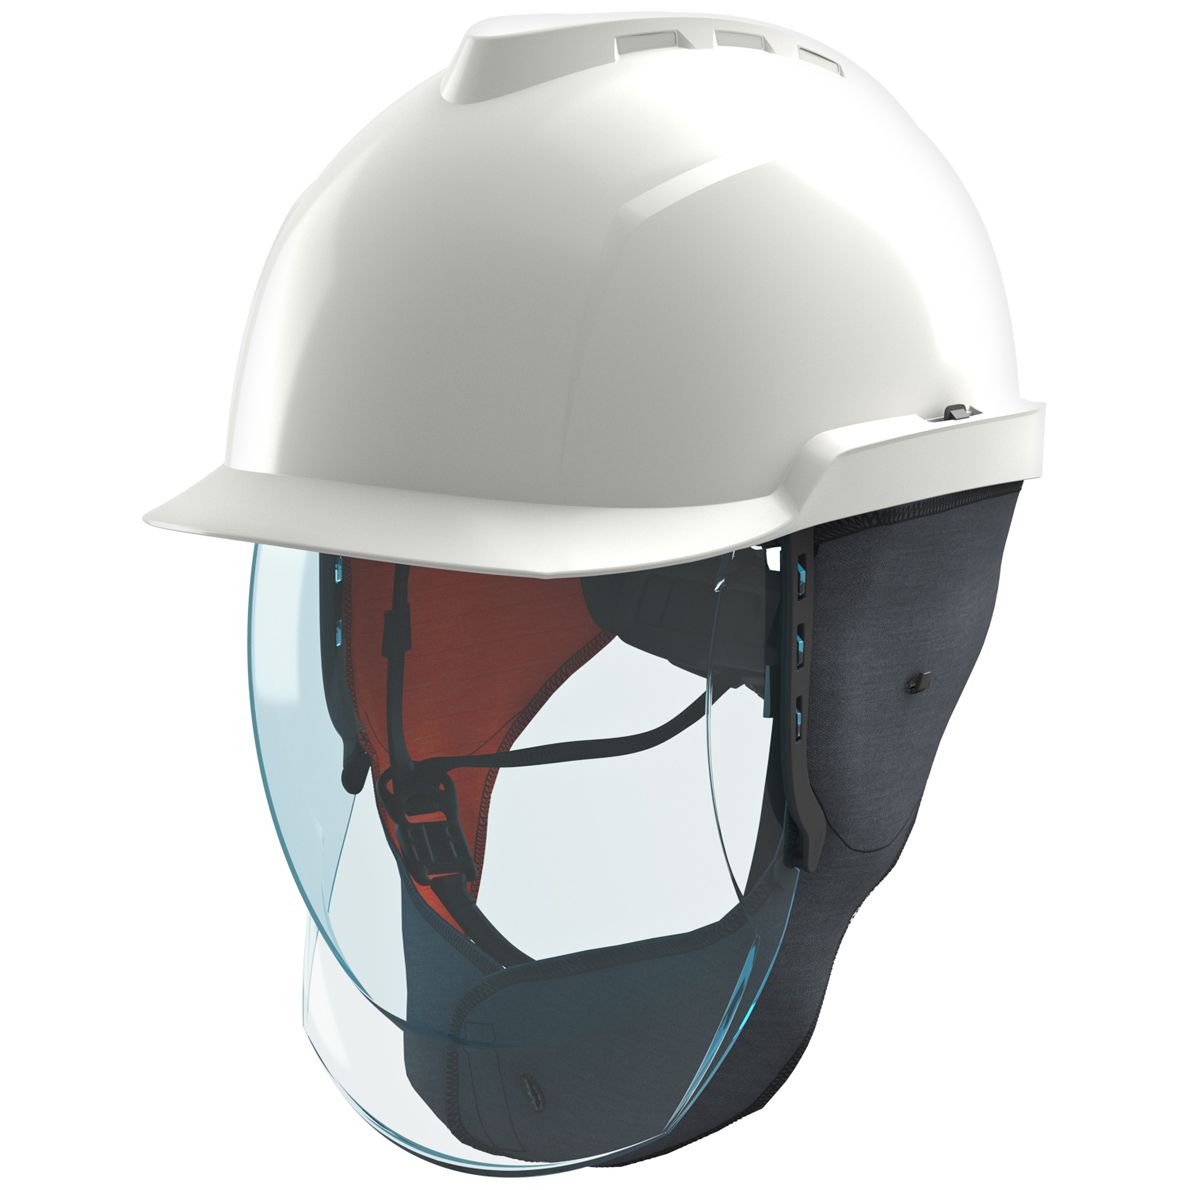 MSA V-Gard 950 Schutzhelm - Elektriker-Bauhelm mit Visier, Drehrad und Ohrenklappen - Störlichtbogen-geprüft